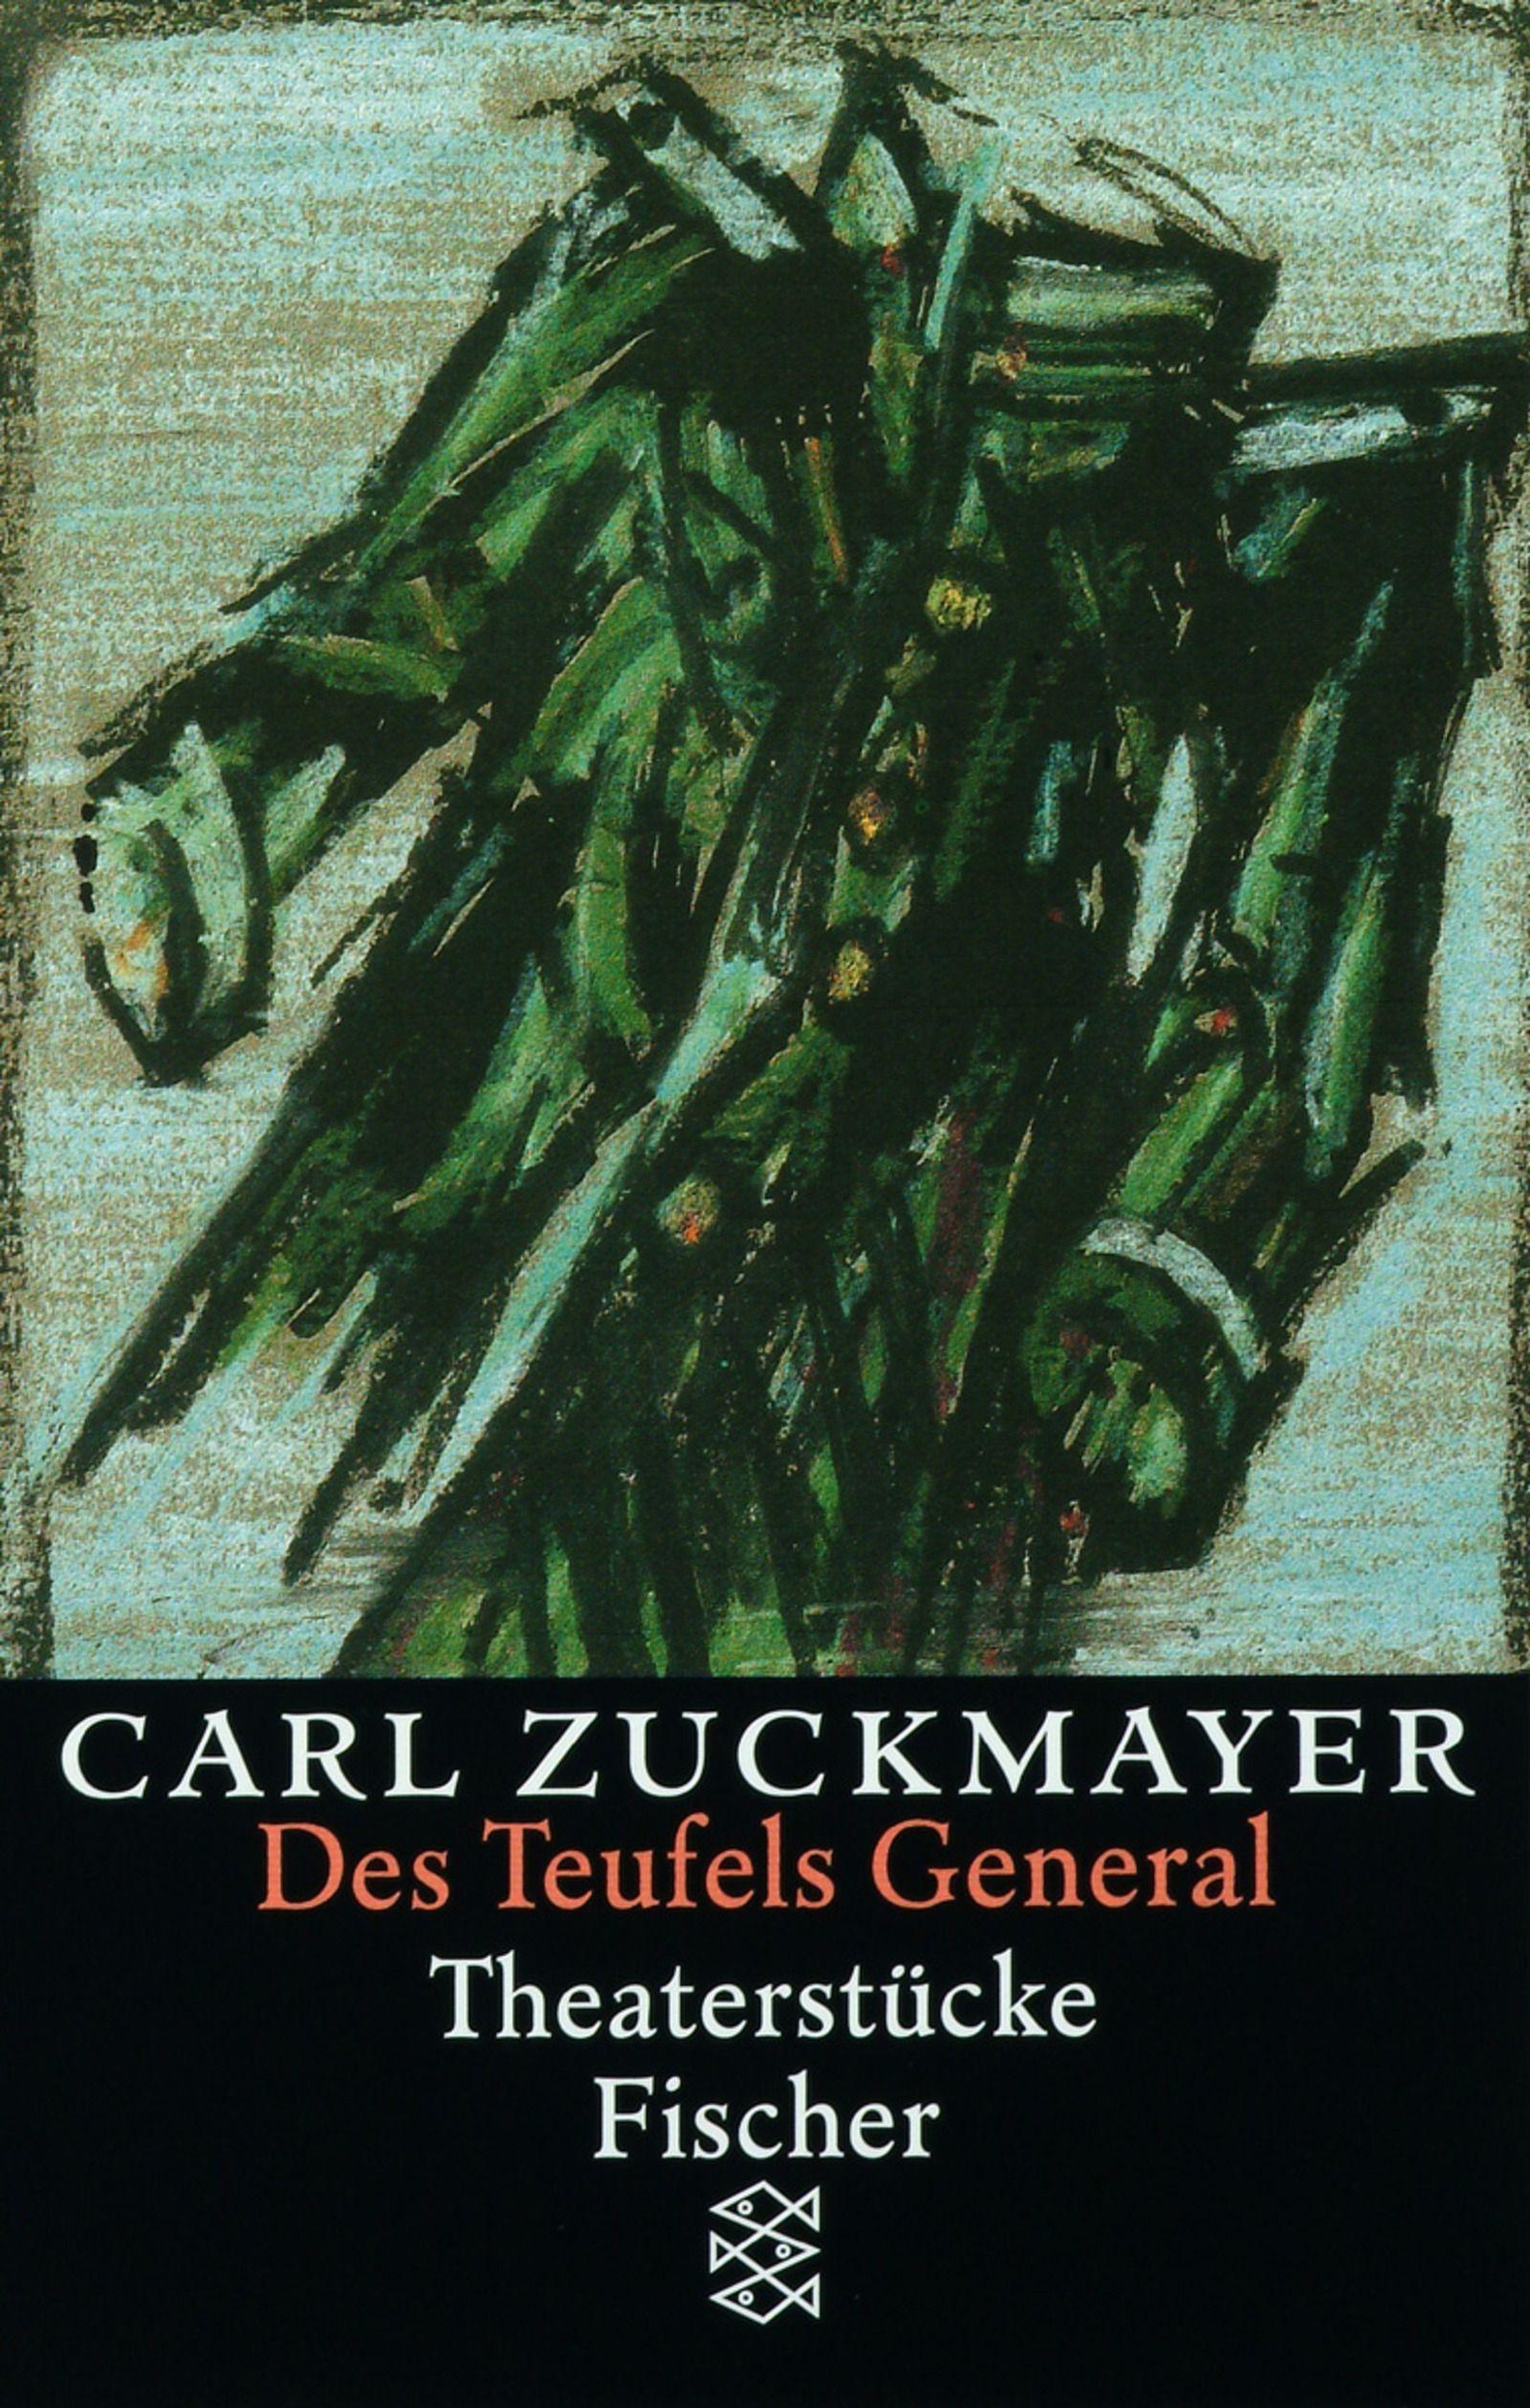 Des Teufels General Buch Von Carl Zuckmayer Versandkostenfrei Bestellen